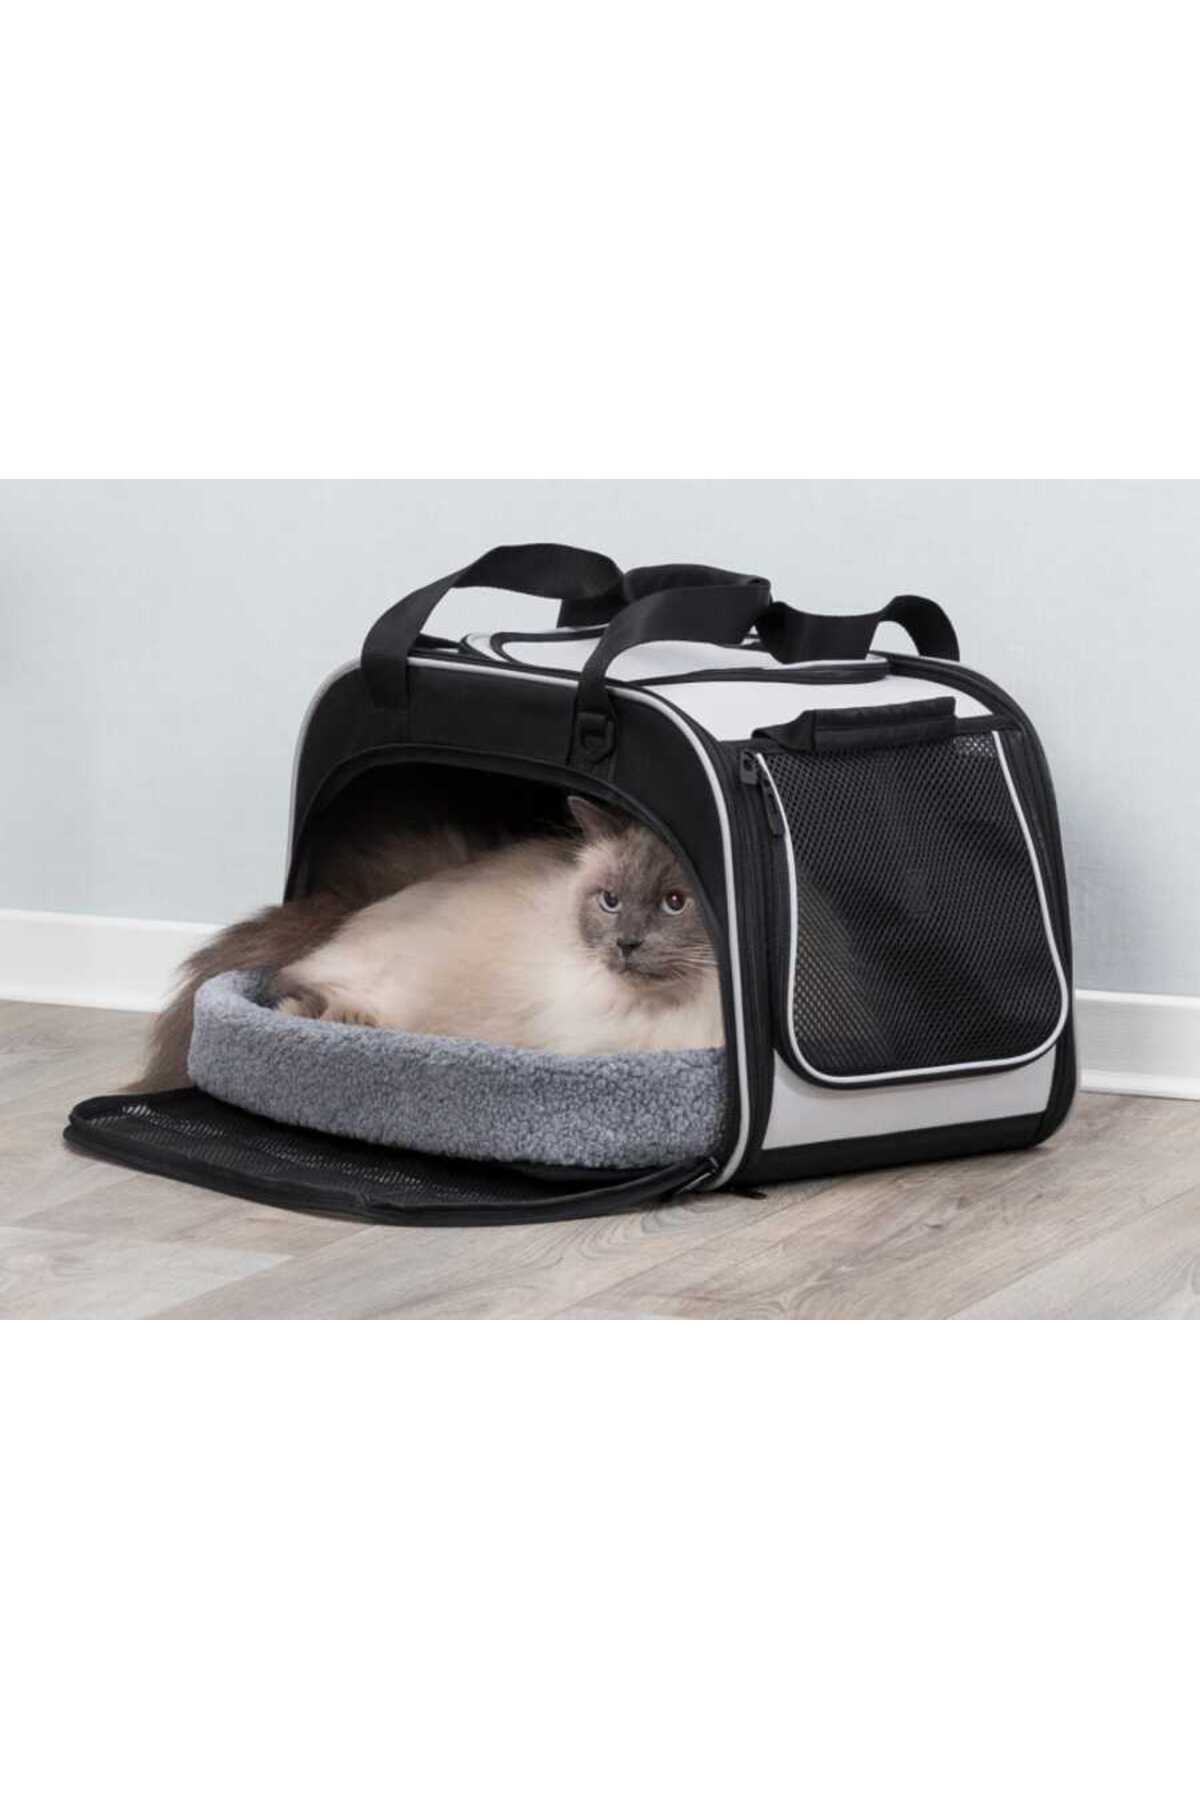 Trixie کیف و تخت حمل گربه 29x31x49cm خاکستری مشکی - Tazemama Express